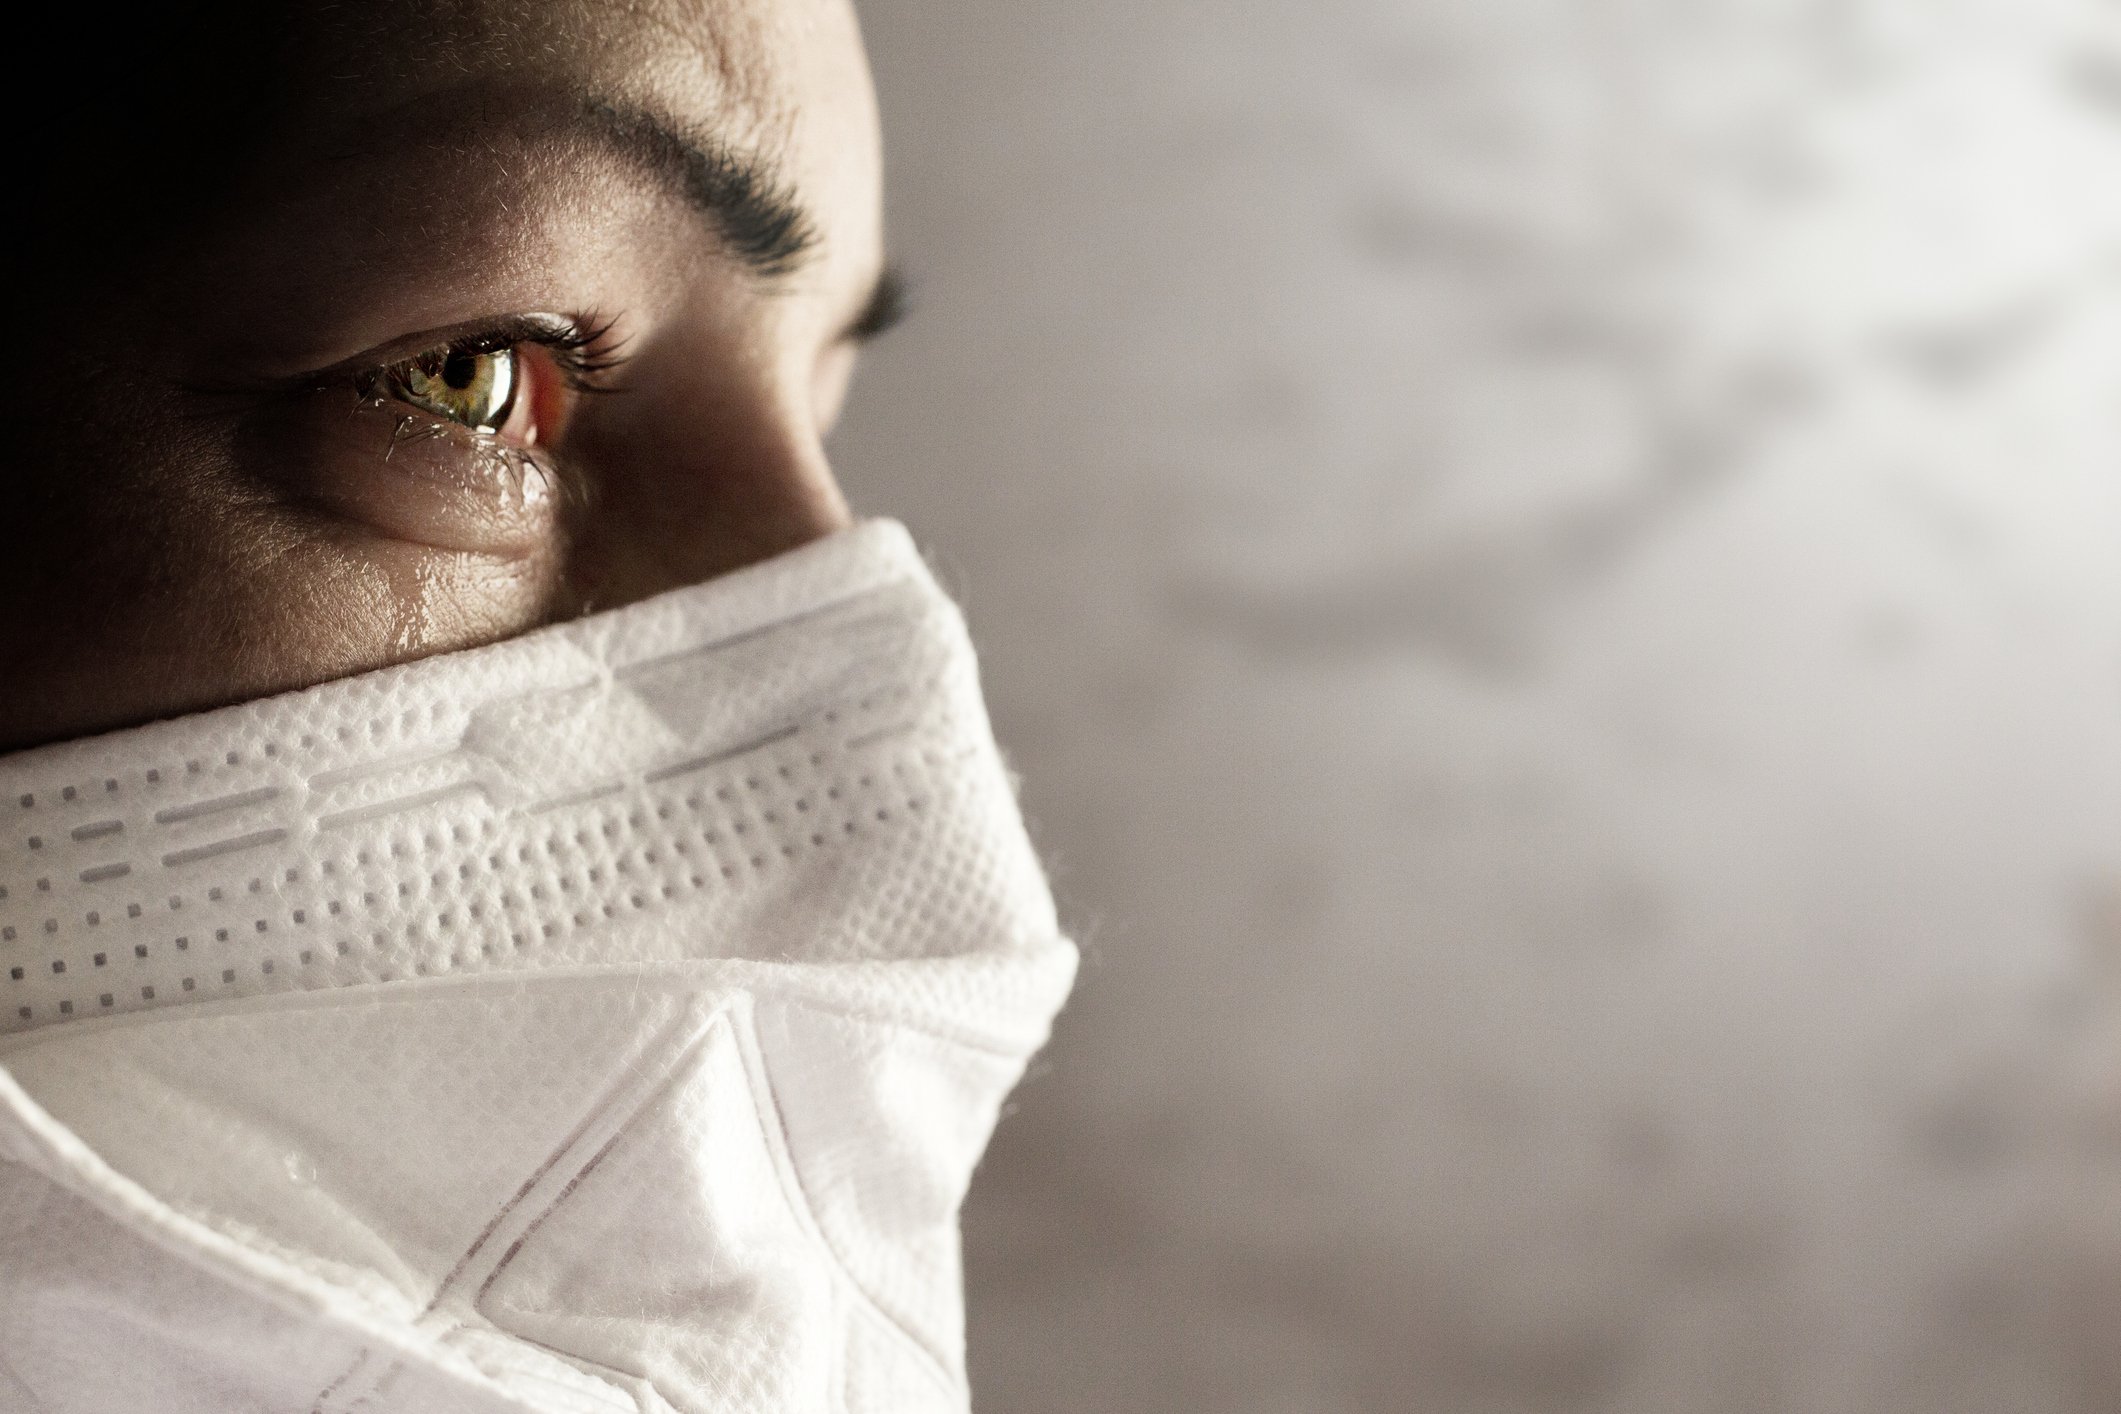 Frauen mit Sicherheitsmaske vor Coronavirus. Covid-19-Ausbruch auf der ganzen Welt. | Quelle: Getty Images